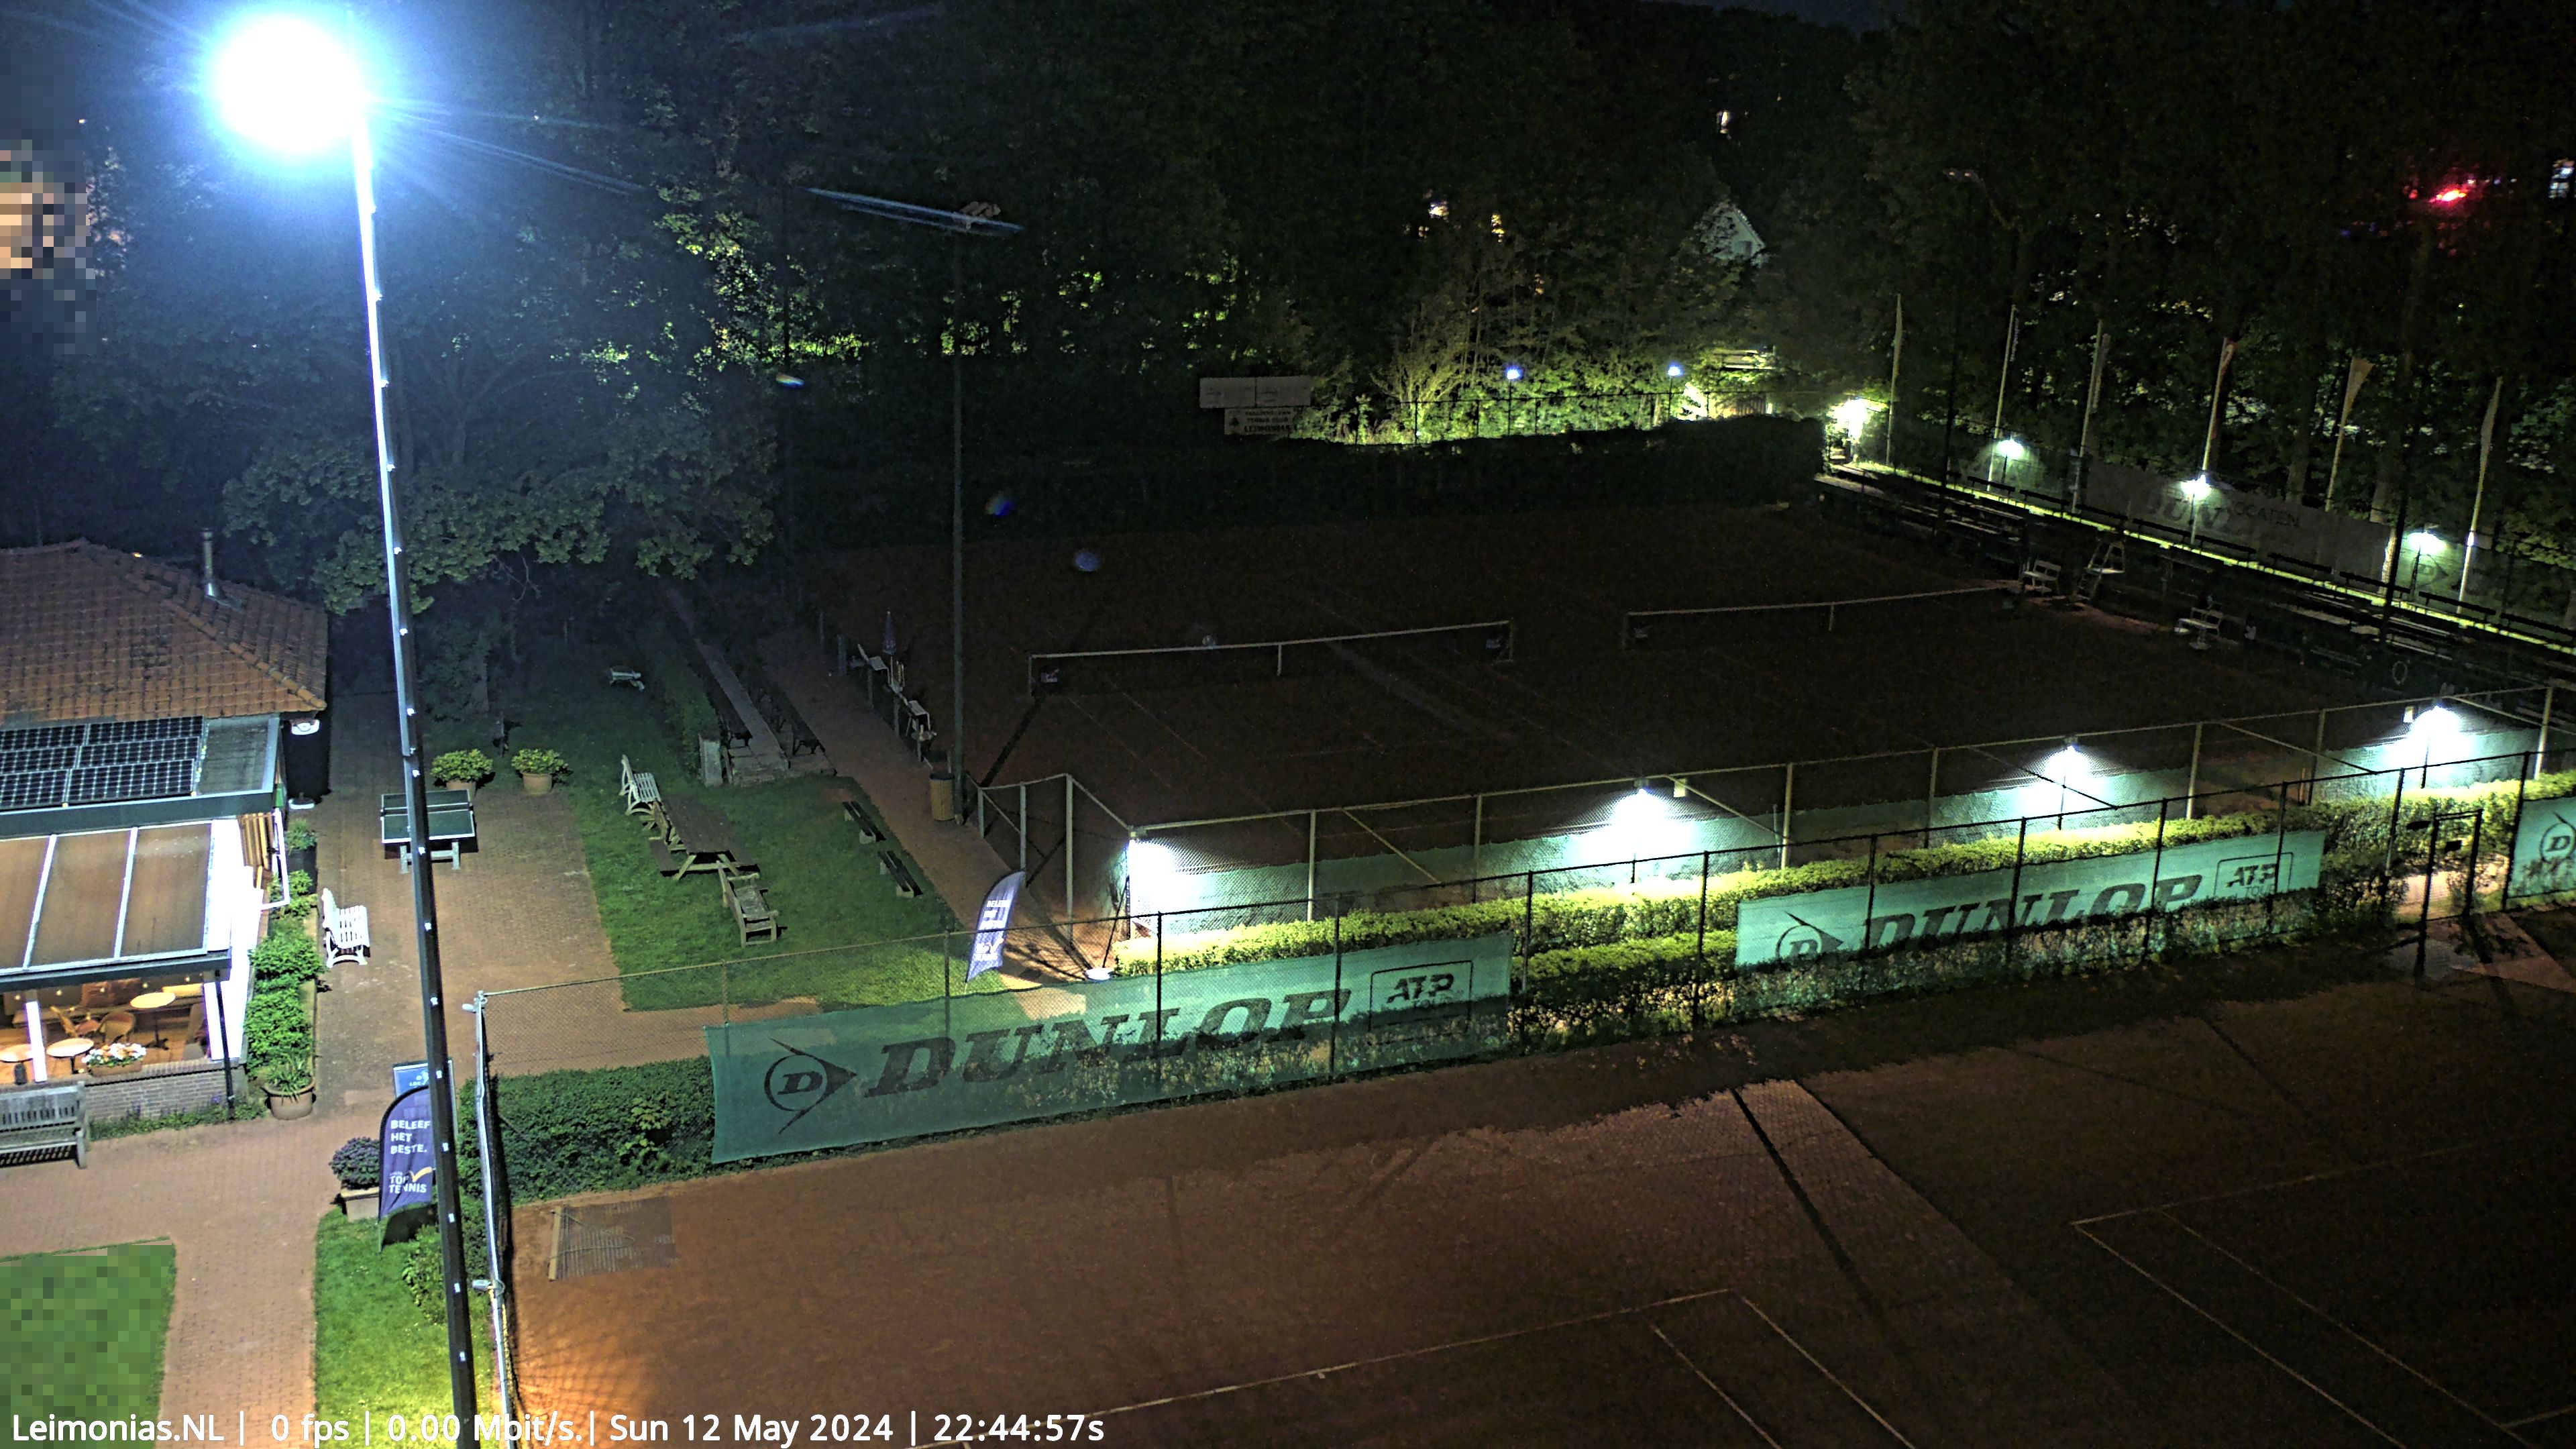 ultraHD PTZ camera tennisvereniging - Den Haag.